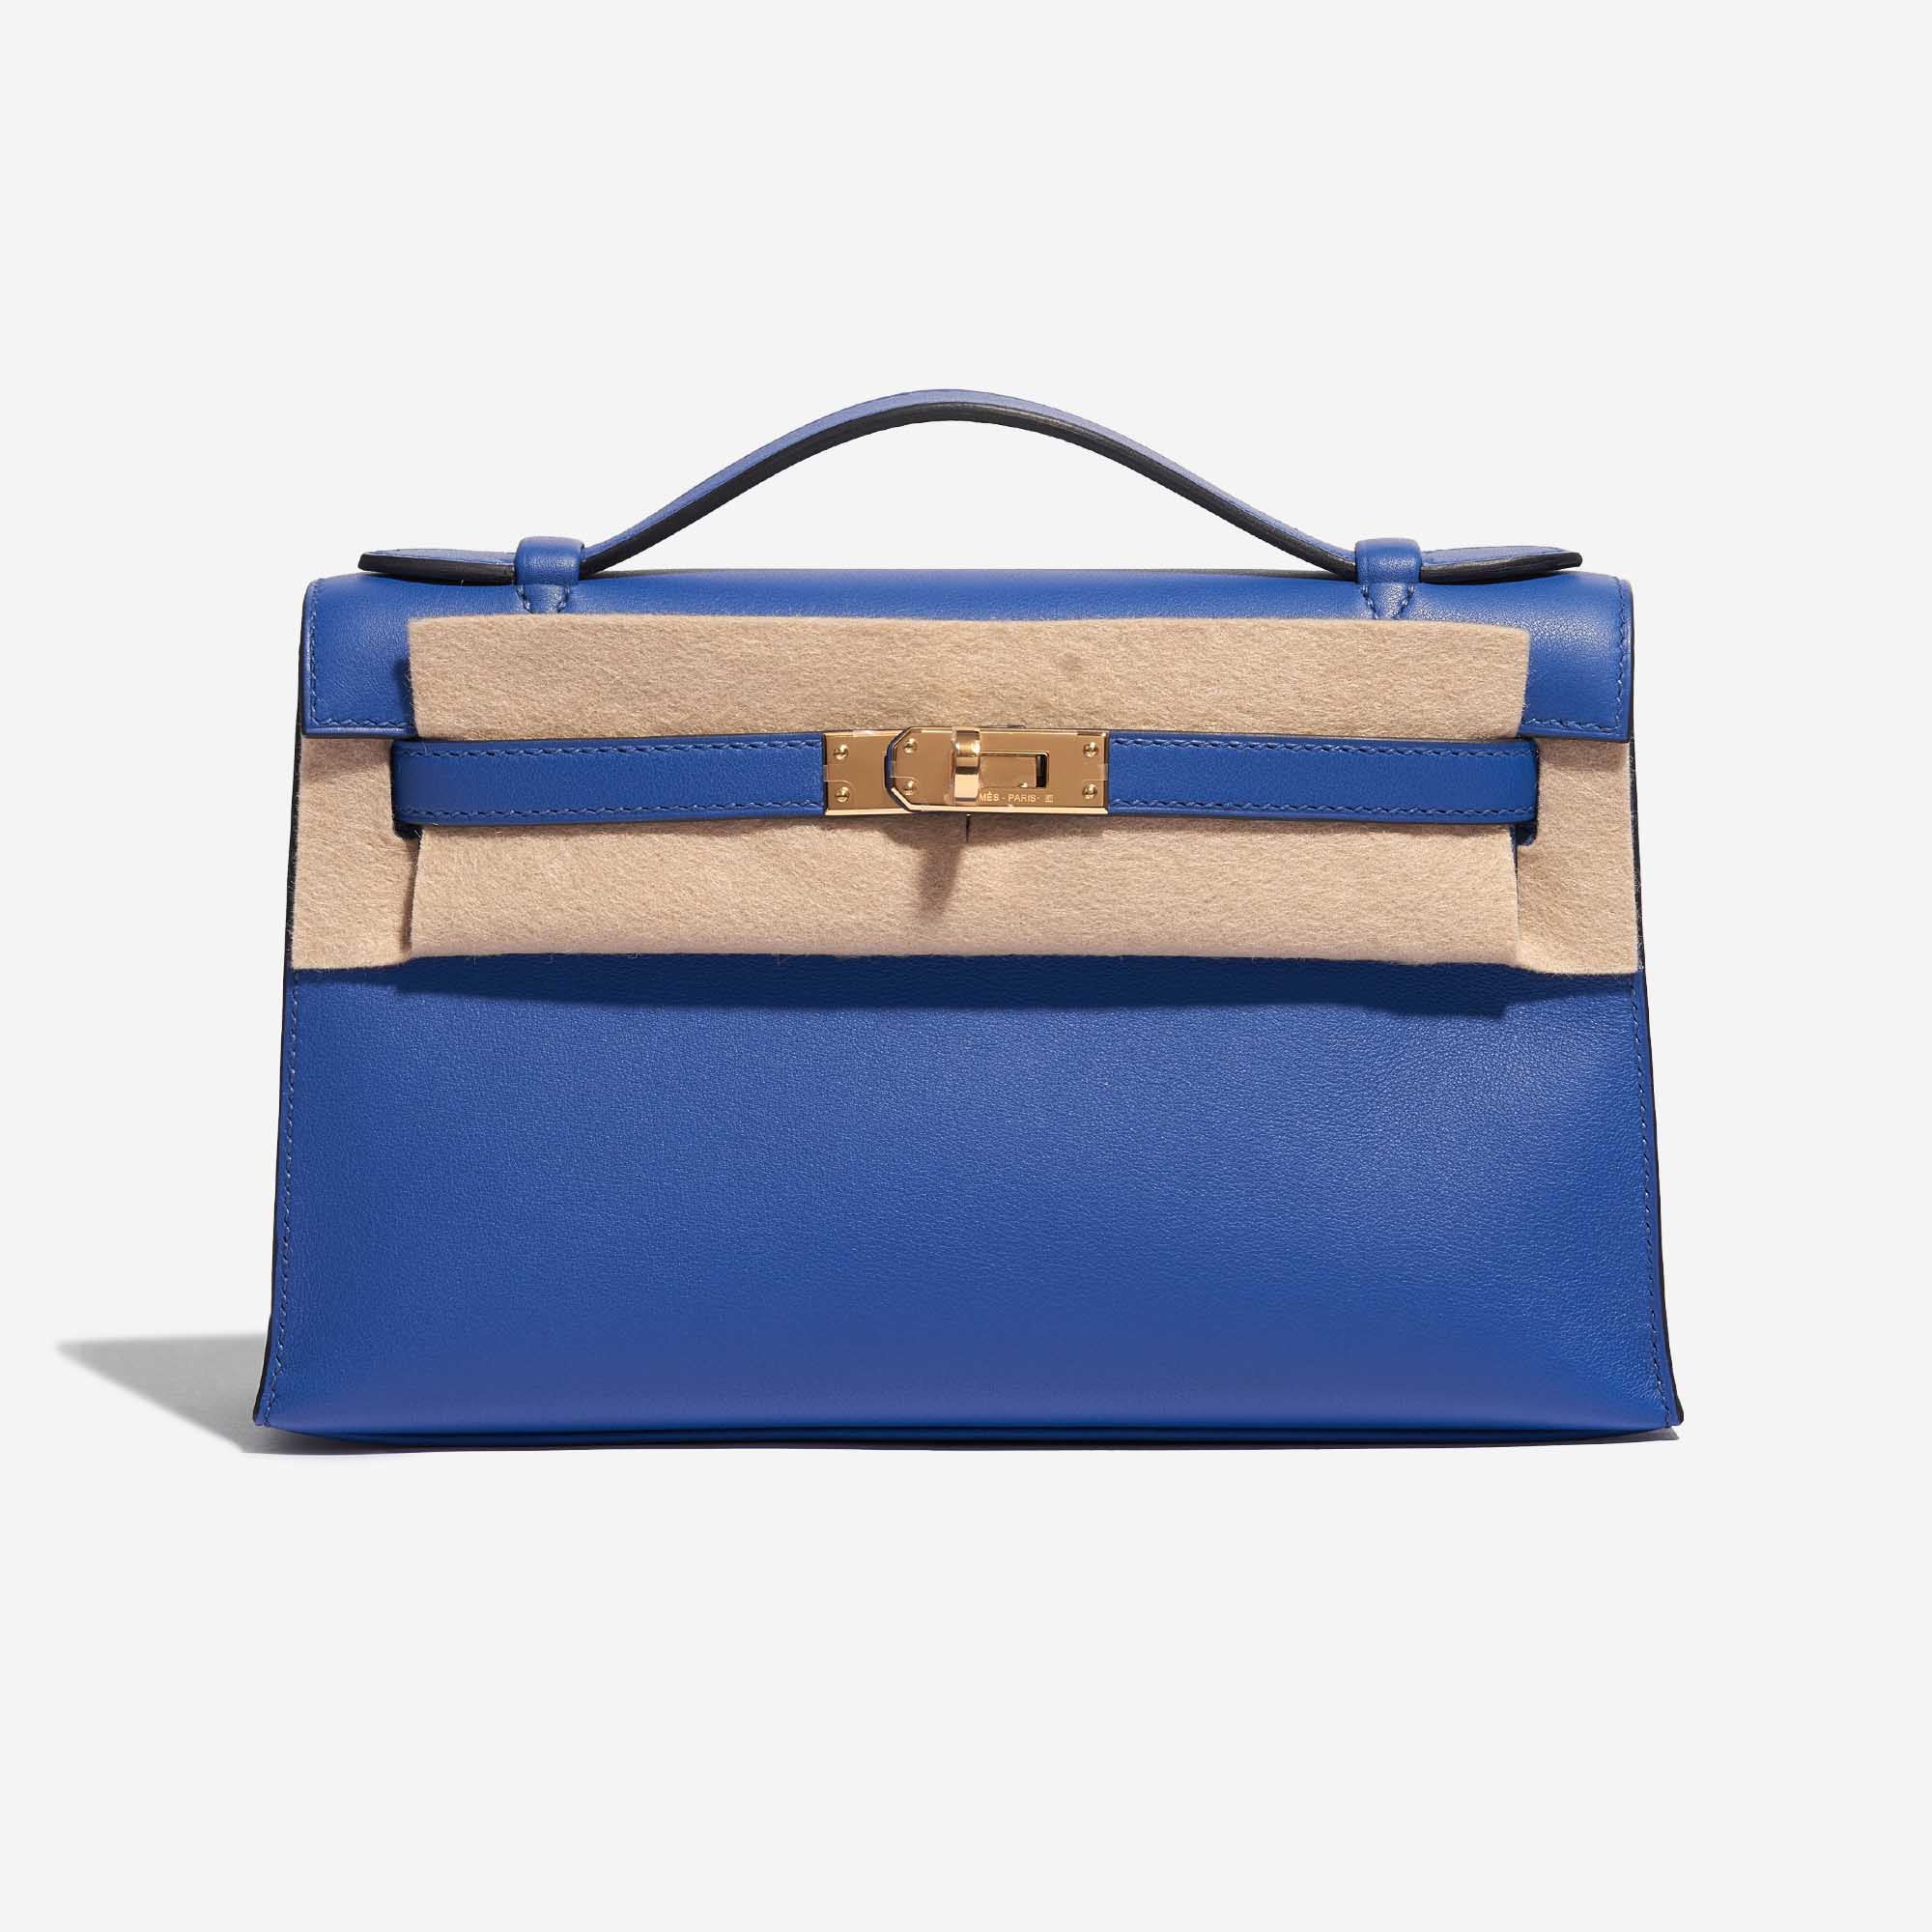 Pre-owned Hermès Tasche Kelly Pochette Swift Blau de France Blau Front Velt | Verkaufen Sie Ihre Designer-Tasche auf Saclab.com